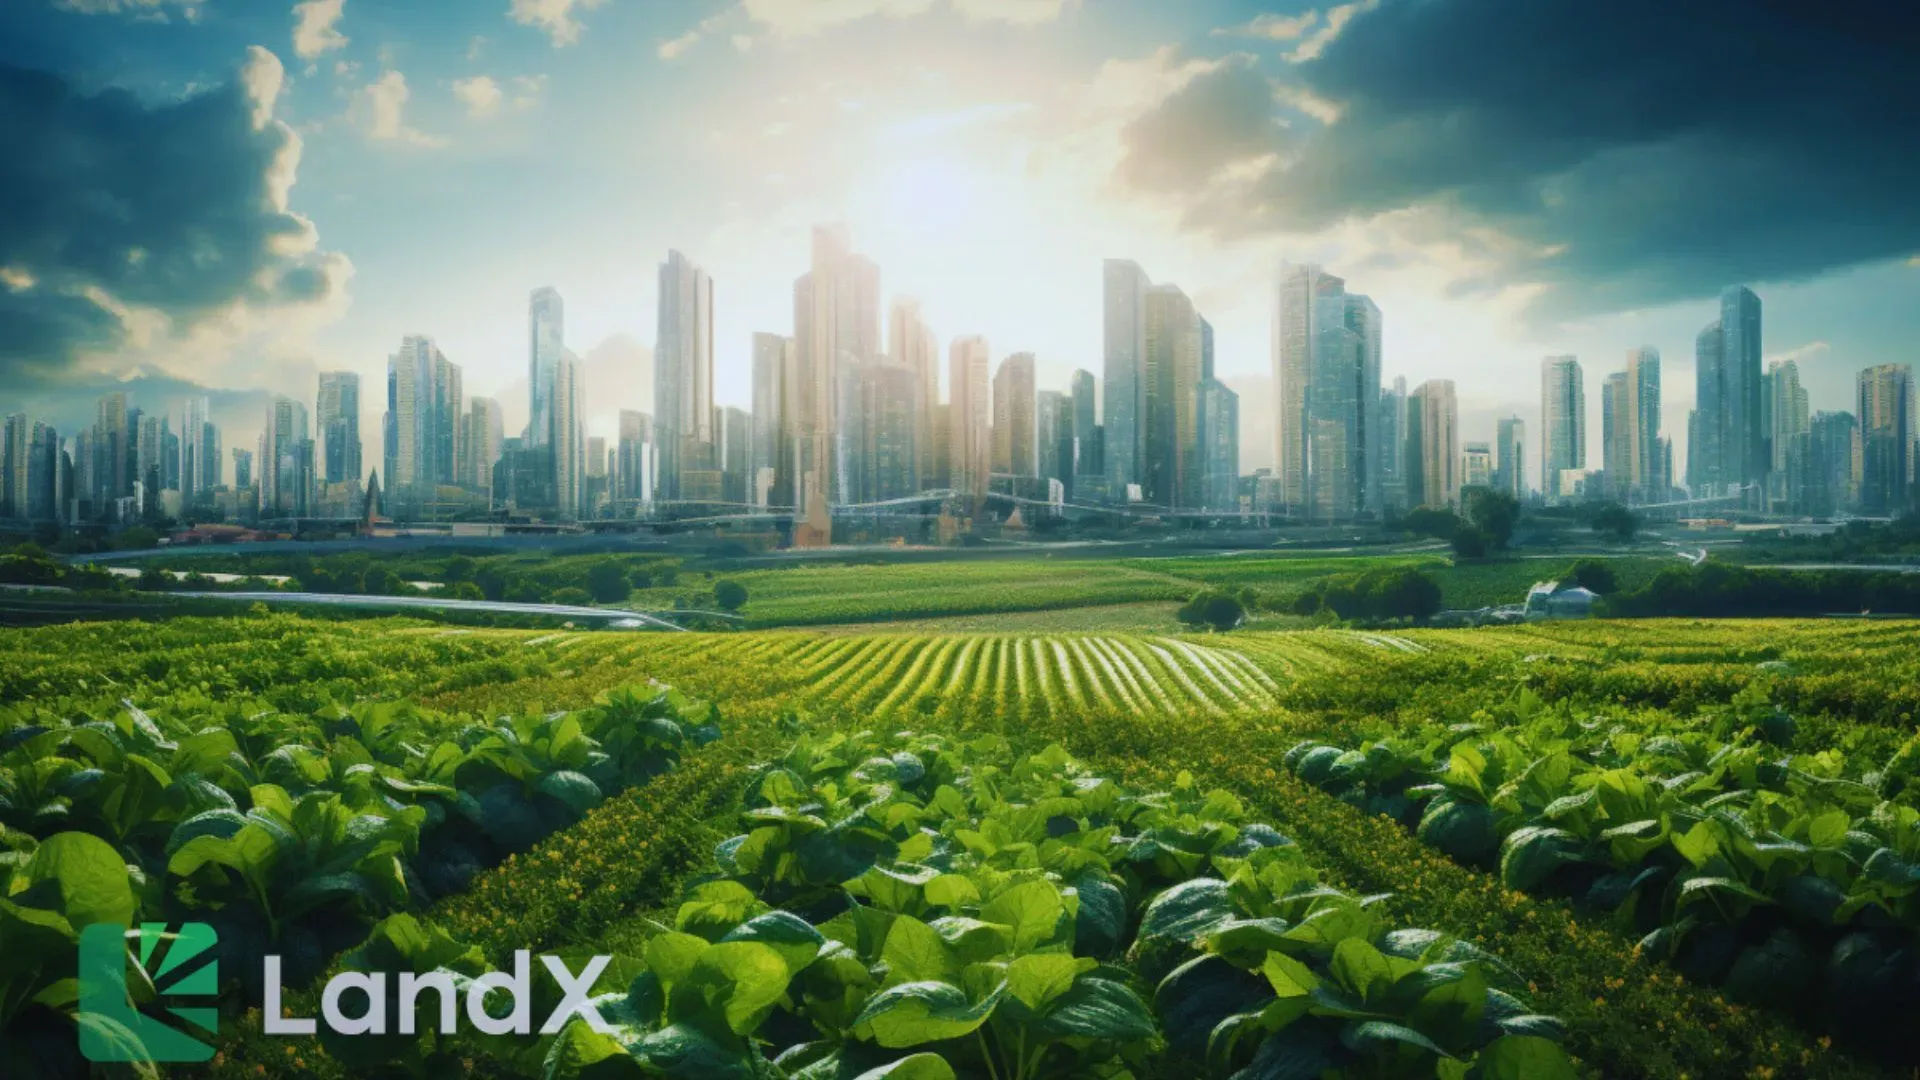 LandX Raises $5M, Launches Public Token Sale